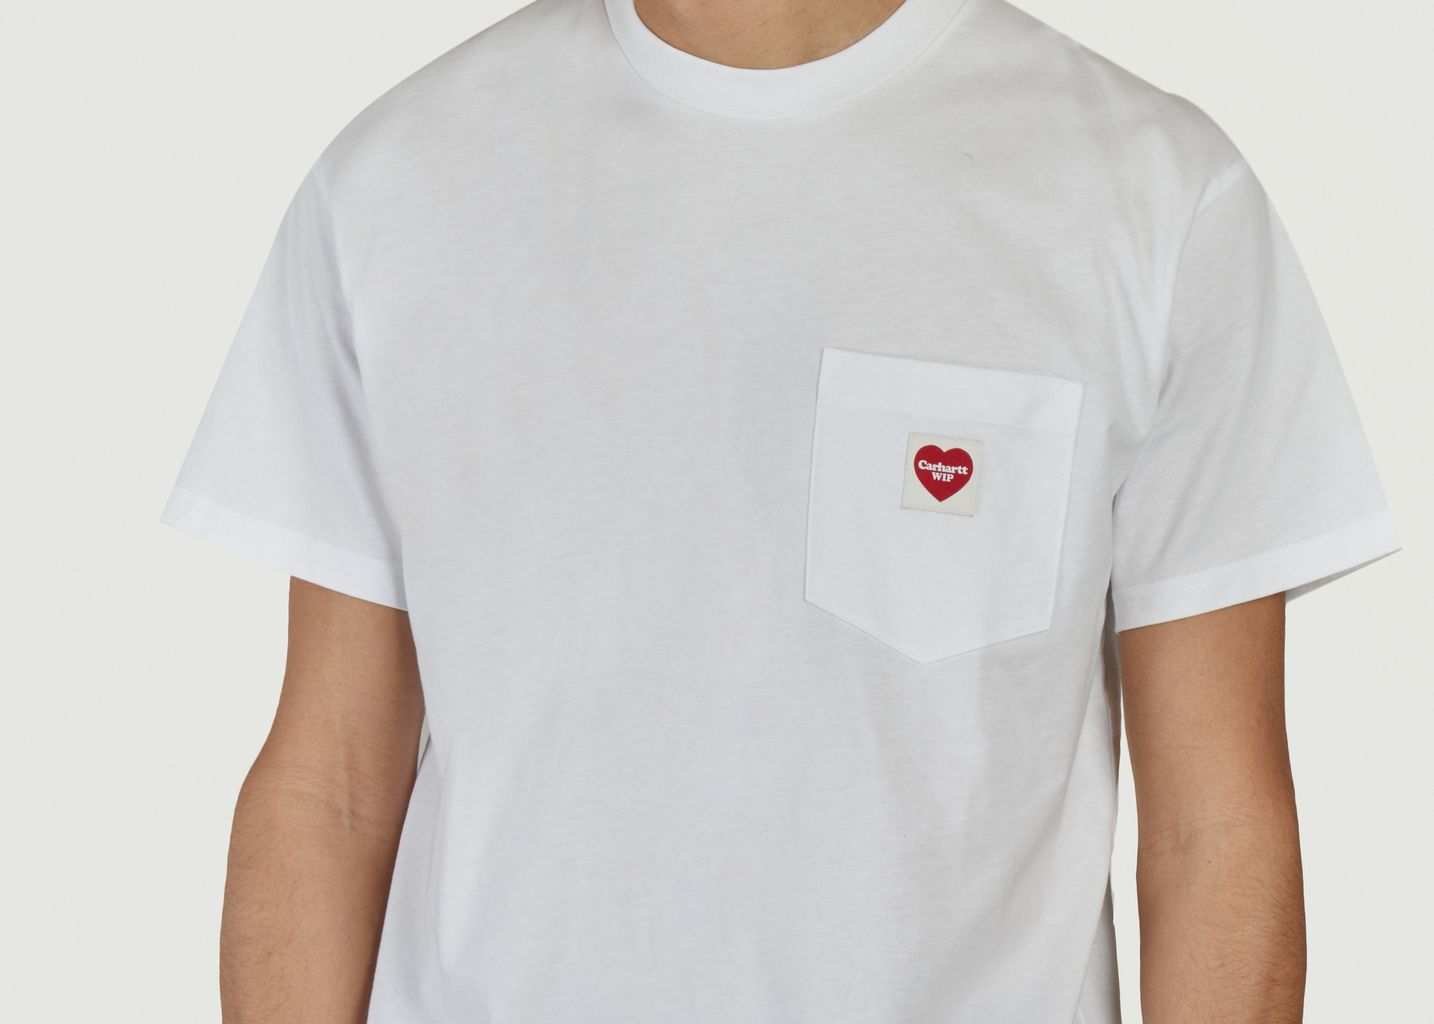 T-shirt Pocket Heart - Carhartt WIP